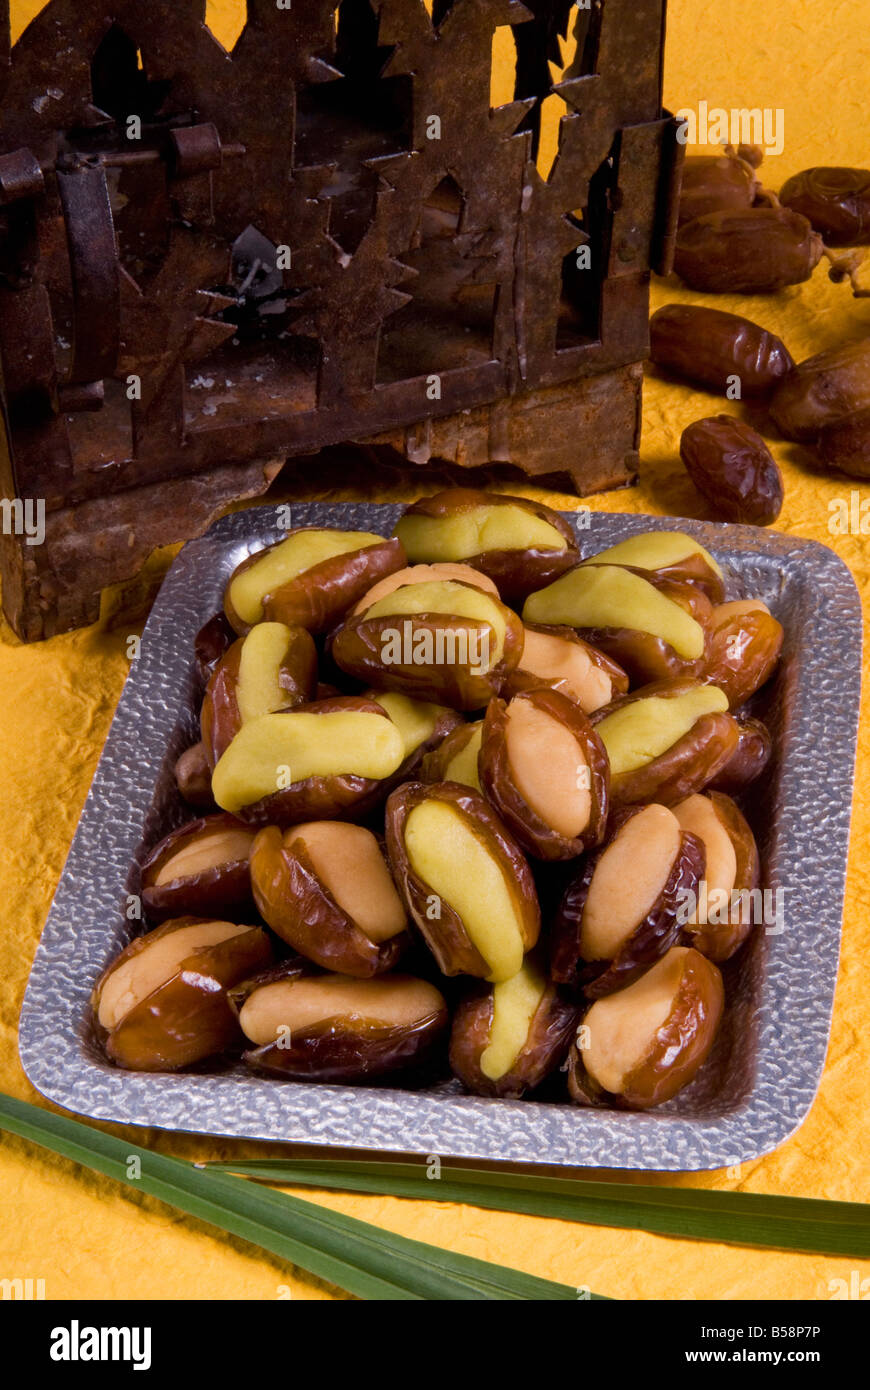 Arabe, dattes farcies aux amandes pâte, Moyen-Orient Banque D'Images